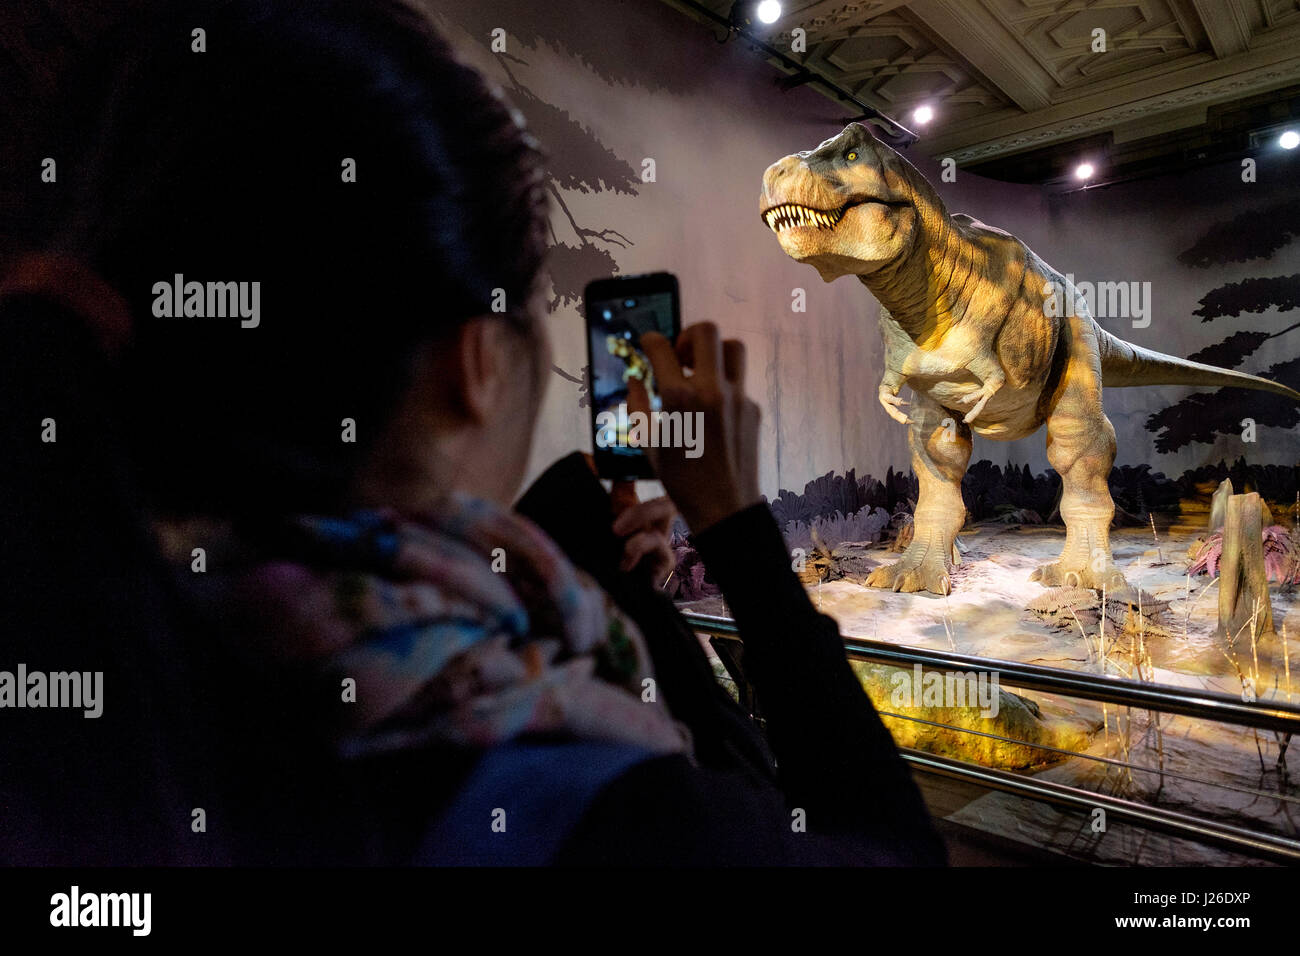 Femme de prendre une photo d'un T-Rex animatronique dinossaur avec son smartphone au Natural History Museum de Londres, Angleterre, Royaume-Uni, Europe Banque D'Images